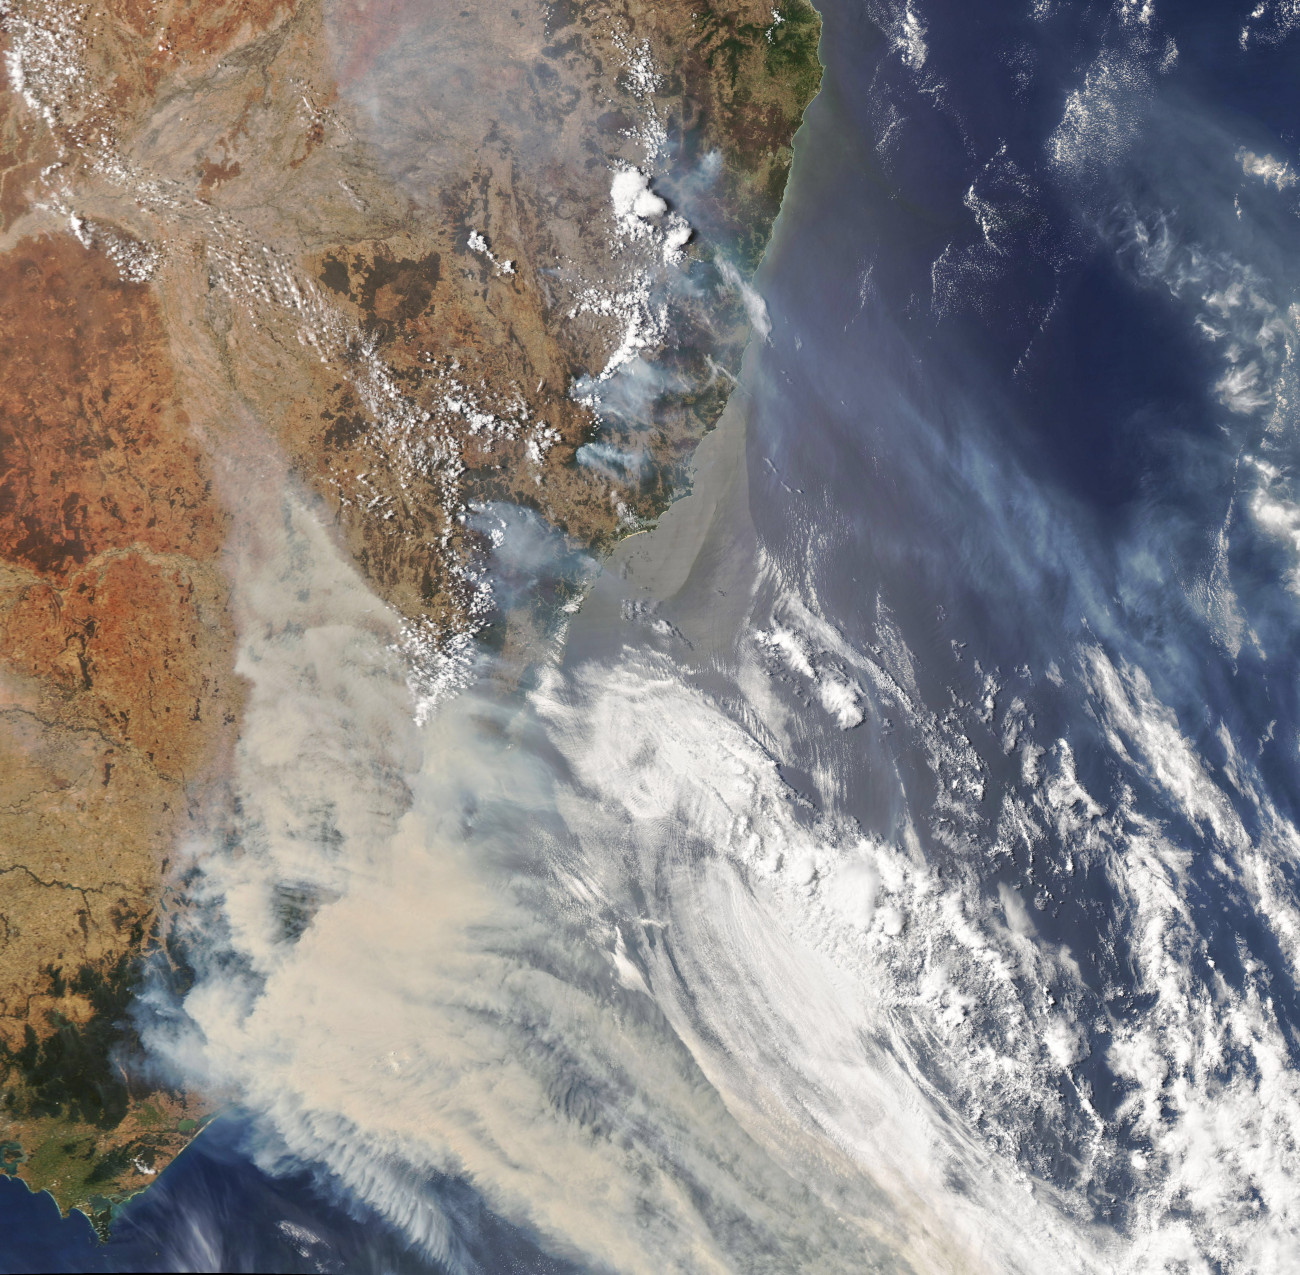 Ausztrália, 2020. január 3.
Az amerikai űrkutatási hivatal, a NASA Földi Obszervatóriuma által 2020. január 3-án közreadott kép az Ausztrália délkeleti részén pusztító erdőtűz füstjéről január 1-jén. Az október óta tomboló bozót- és erdőtüzek miatt emberek tízezreit kell kimenteni Ausztrália délkeleti térségéből. Ausztrália-szerte 5,5 millió hektárnyi földterület égett le, 18 ember meghalt és több mint ezer ház vált a lángok martalékává.
MTI/EPA